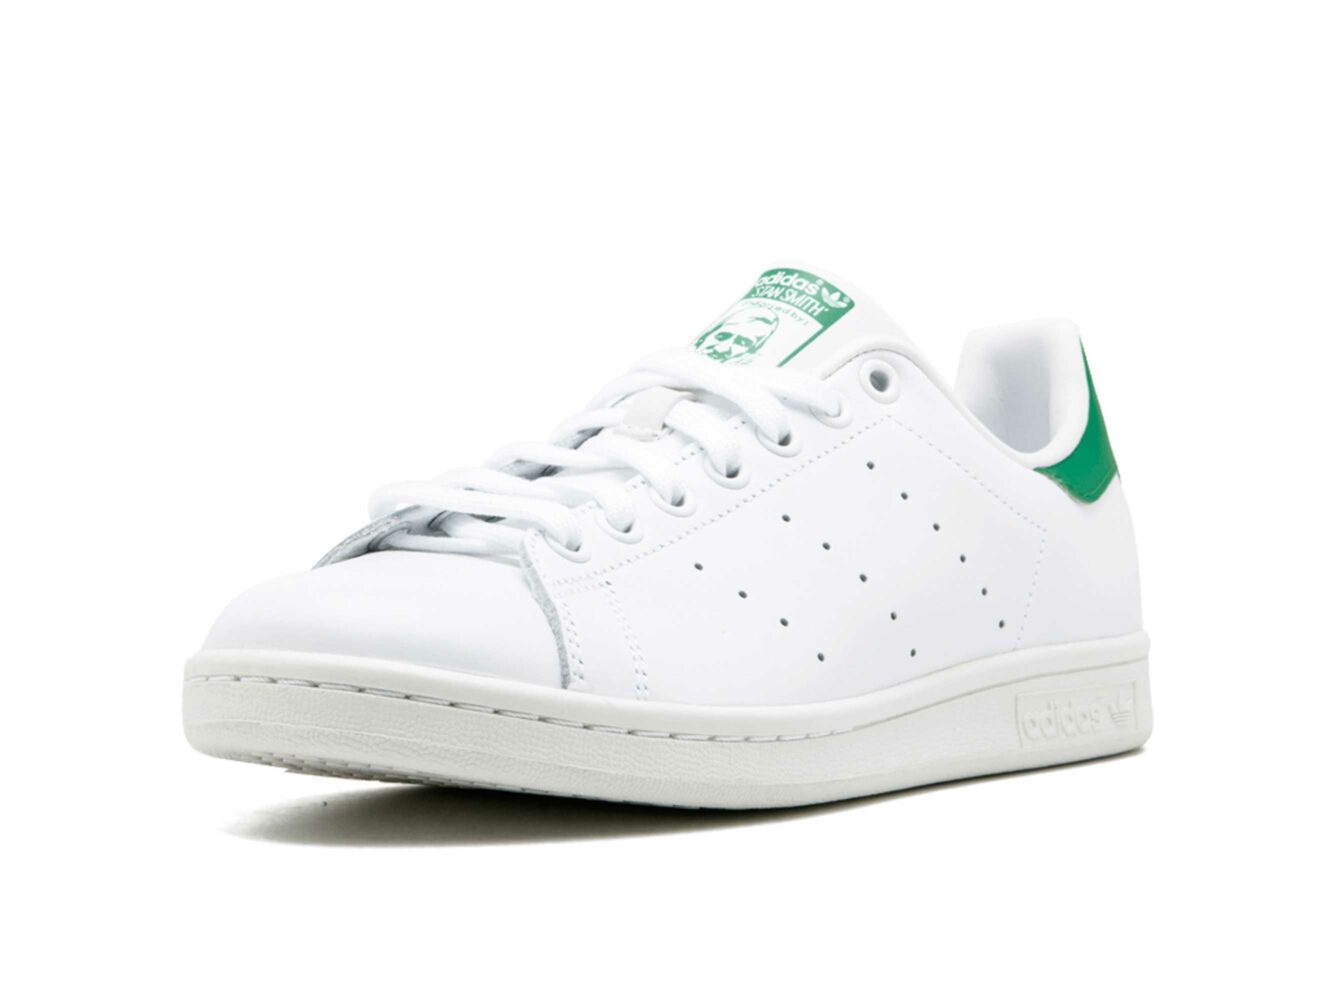 adidas stan smith leather white green m20324 купить